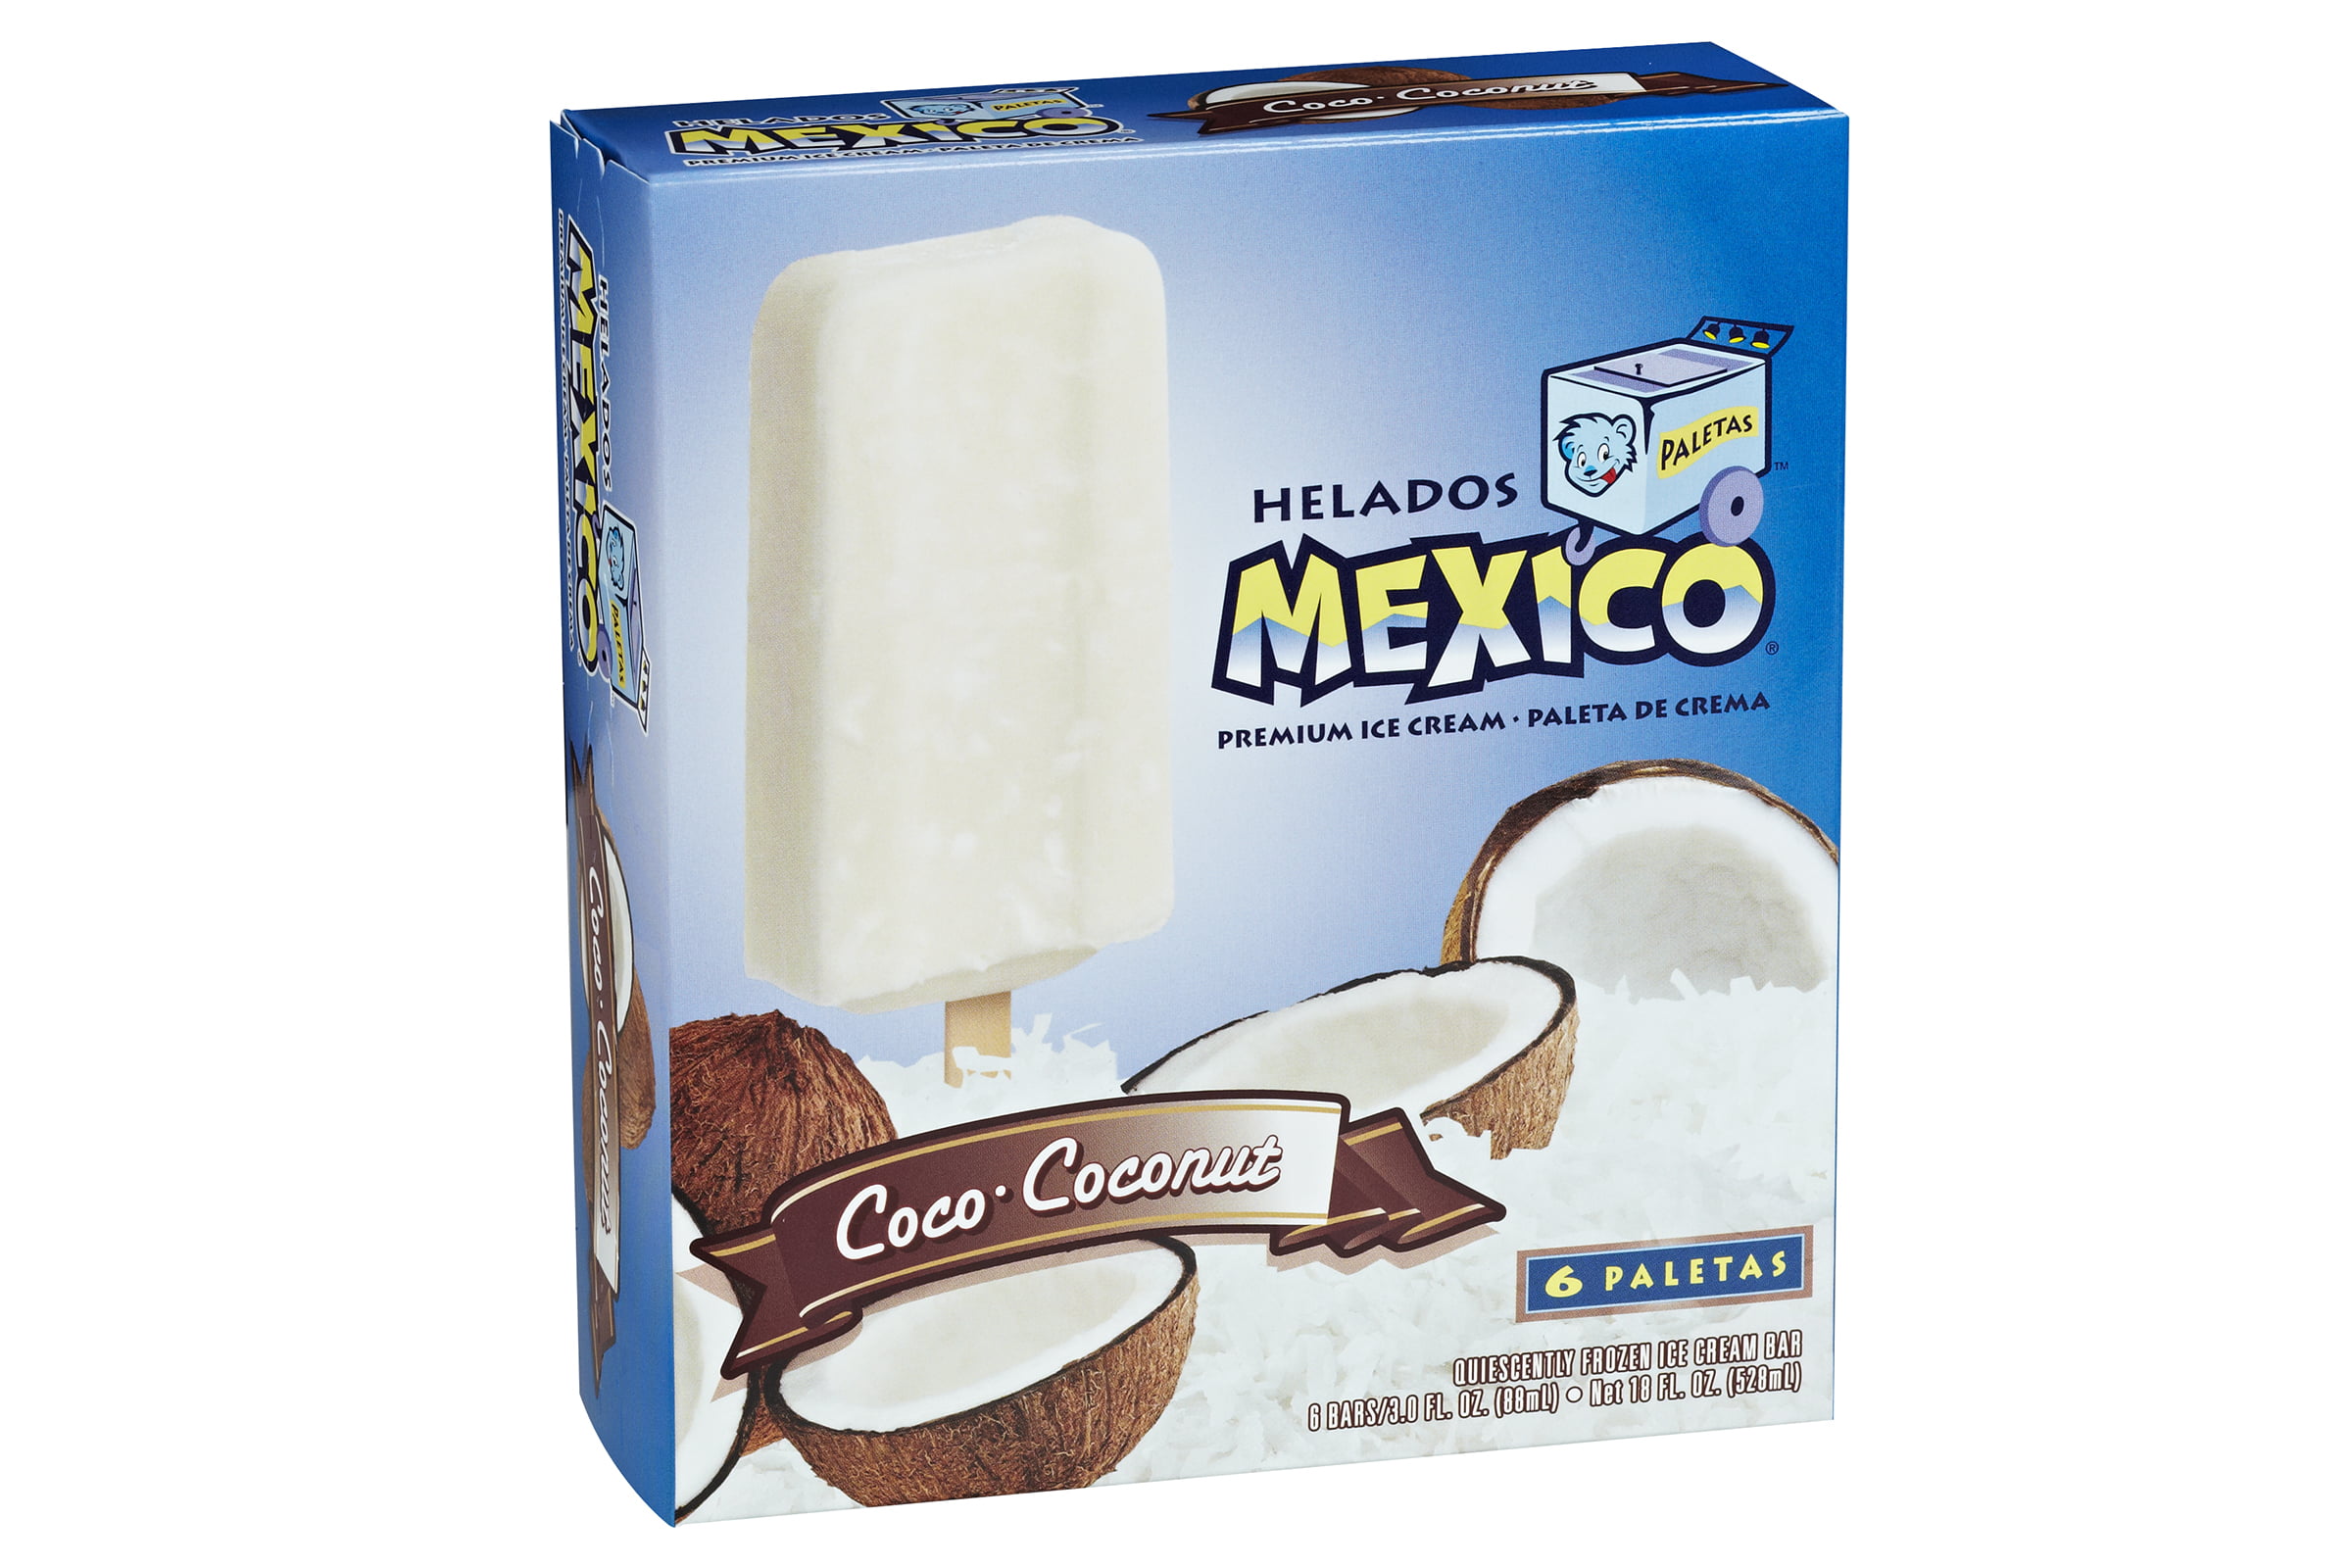 Helados Mexico Coco Coconut Premium Ice Cream Bars 18 Fl Oz 6 Count ...